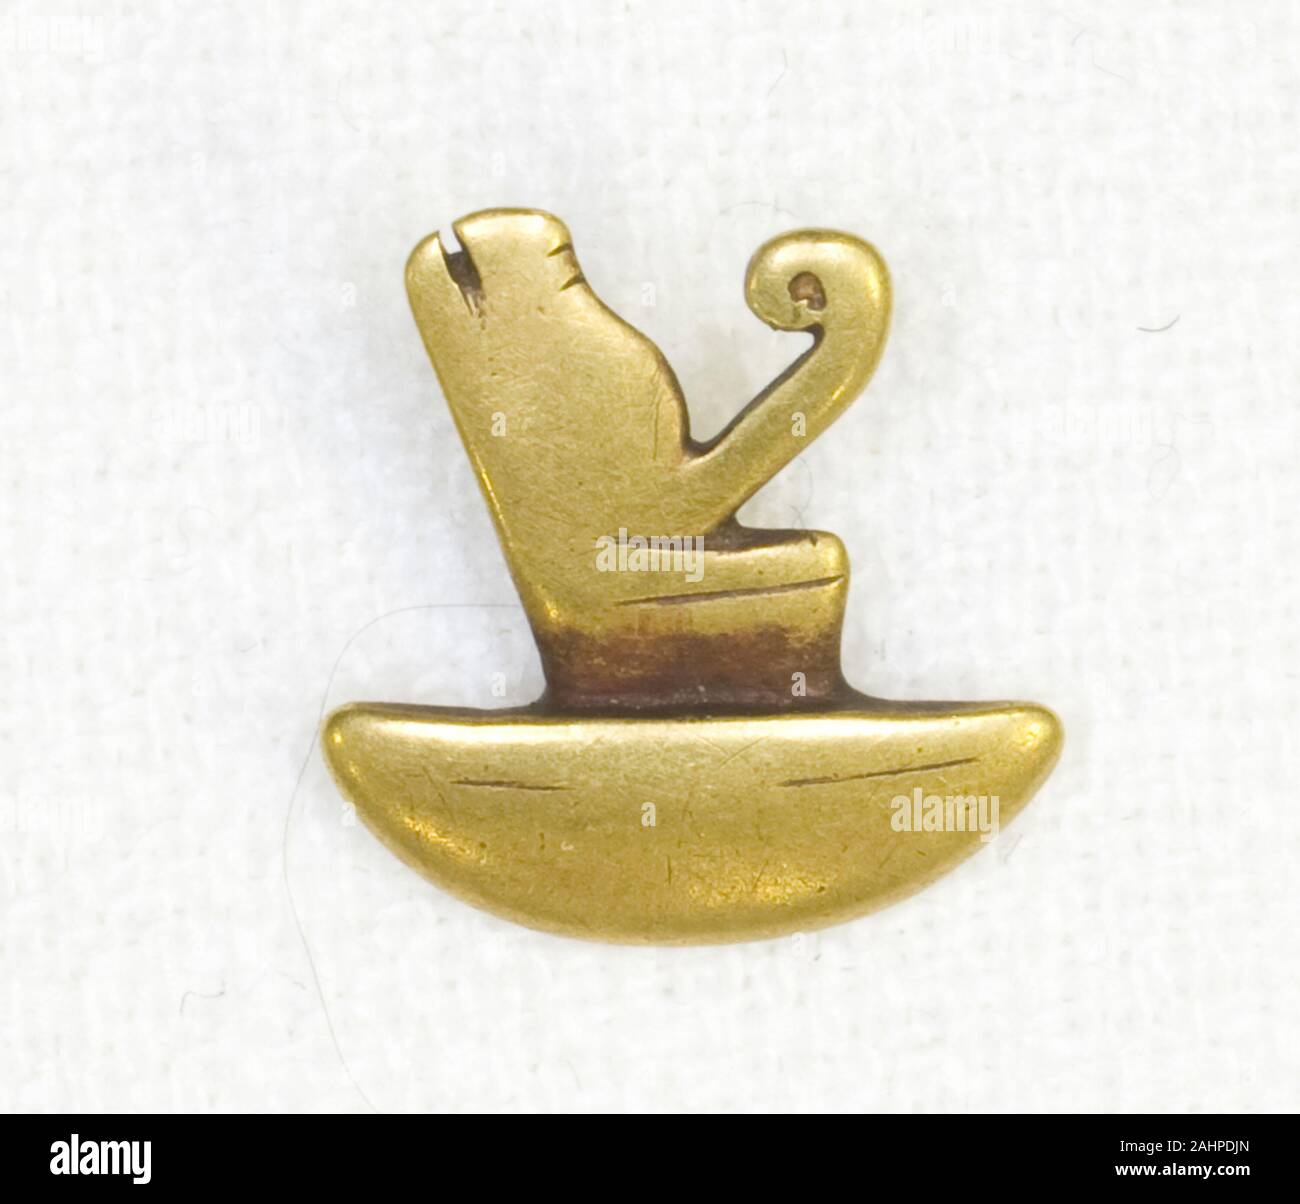 Antica egiziana. Amulet della doppia corona. 305 BC-30 BC. L'Egitto. Oro su piccola scala figurine egiziano, noto come amuleti, sono stati pensati per promuovere la salute e la buona fortuna. Amuleti sono state una parte così importante ofEgyptian credenze religiose che sono stati indossati da entrambi i vivi e i morti. Essi potrebbero essere montati su anelli o strung come braccialetti e collane e sono state poste tra la mummia di incarti per proteggere il defunto la rinascita e il benessere nella vita ultraterrena. Ci sono molte varietà di amuleti, comprese le figure di divinità, parti del corpo umano (ordivine) corpo, animali, piante e oggetti di dail Foto Stock